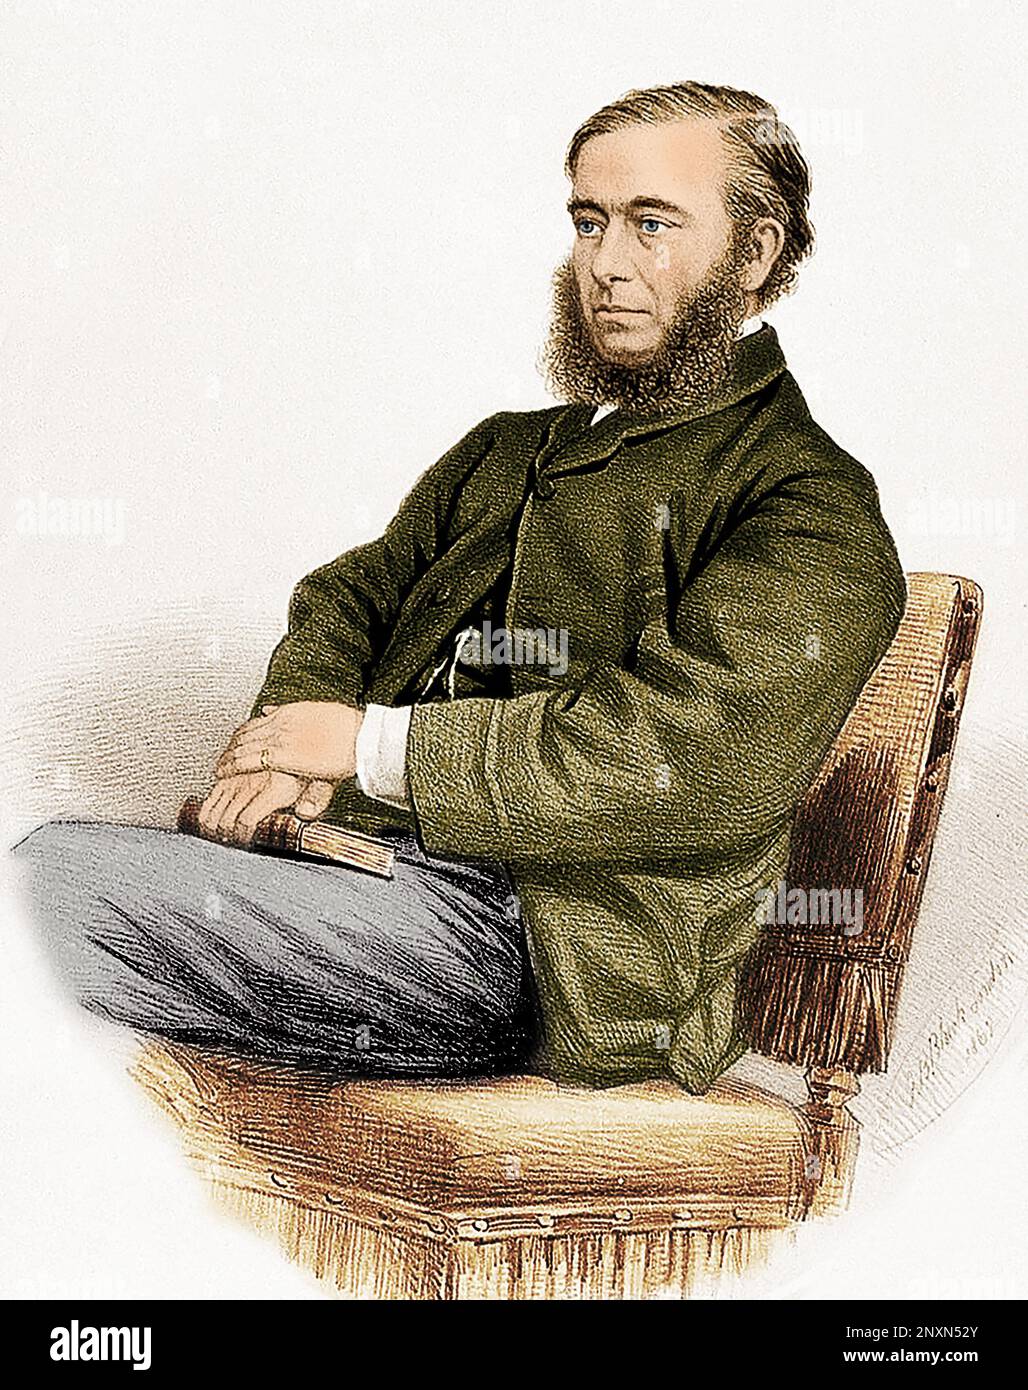 William Budd (1811-1880), englischer Arzt und Epidemiologe, der die Übertragung von Cholera und Typhus besonders verstand. Gefärbt. Stockfoto